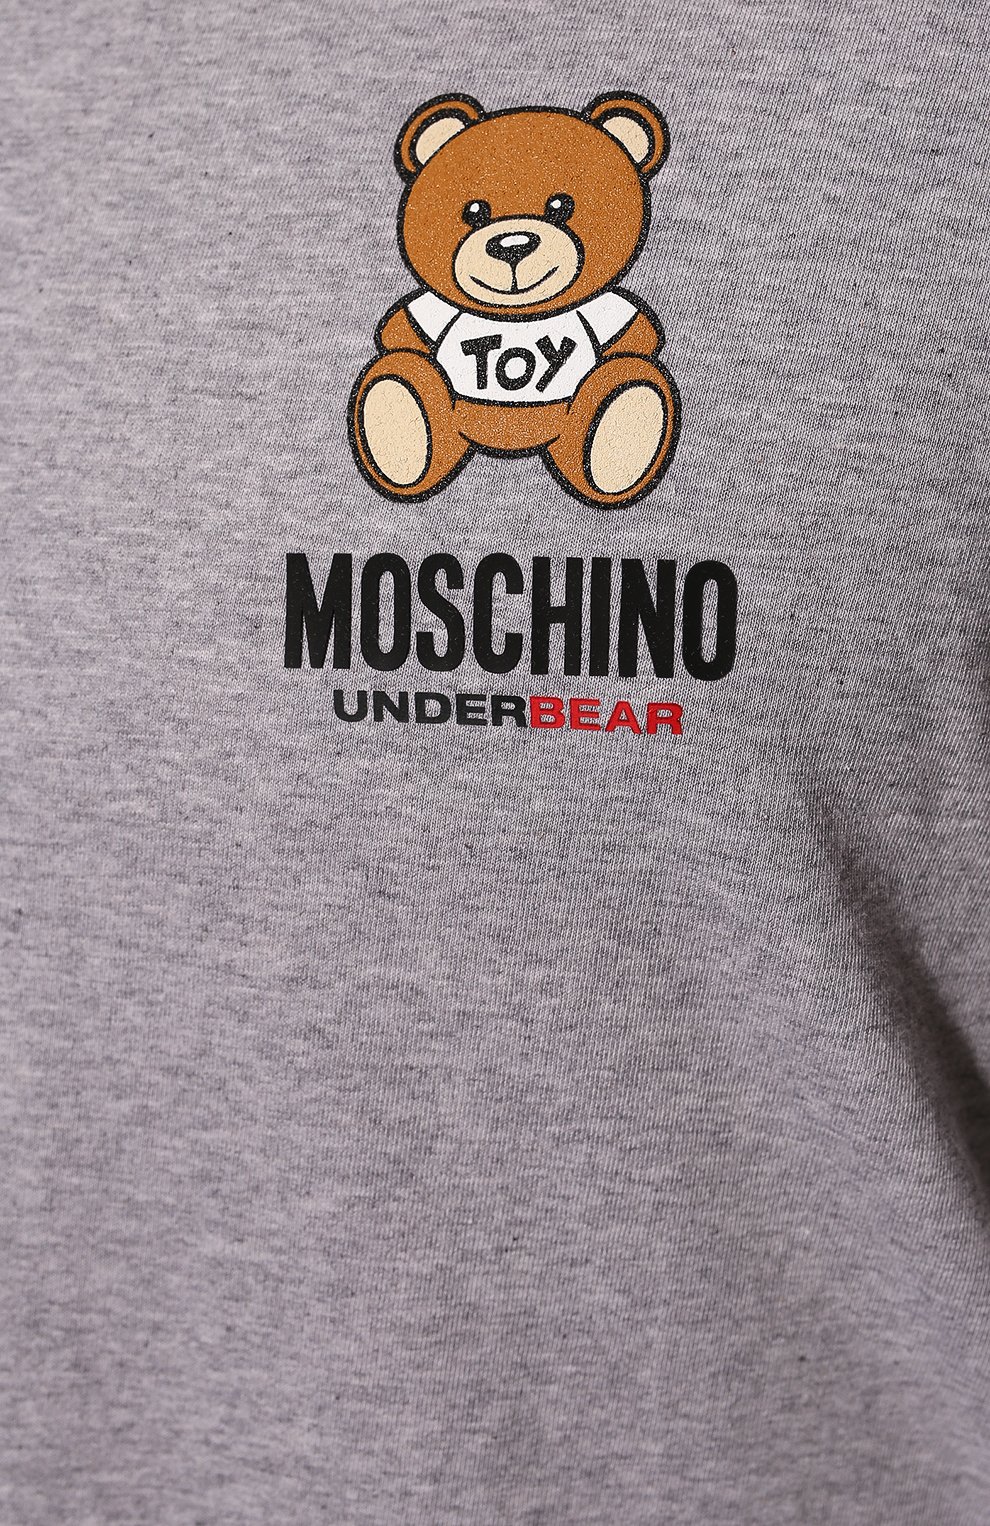 Мужская хлопковая футболка MOSCHINO серого цвета, арт. A1923/8101 | Фото 5 (Кросс-КТ: домашняя одежда; Рукава: Короткие; Длина (для топов): Стандартные; Материал внешний: Хлопок)